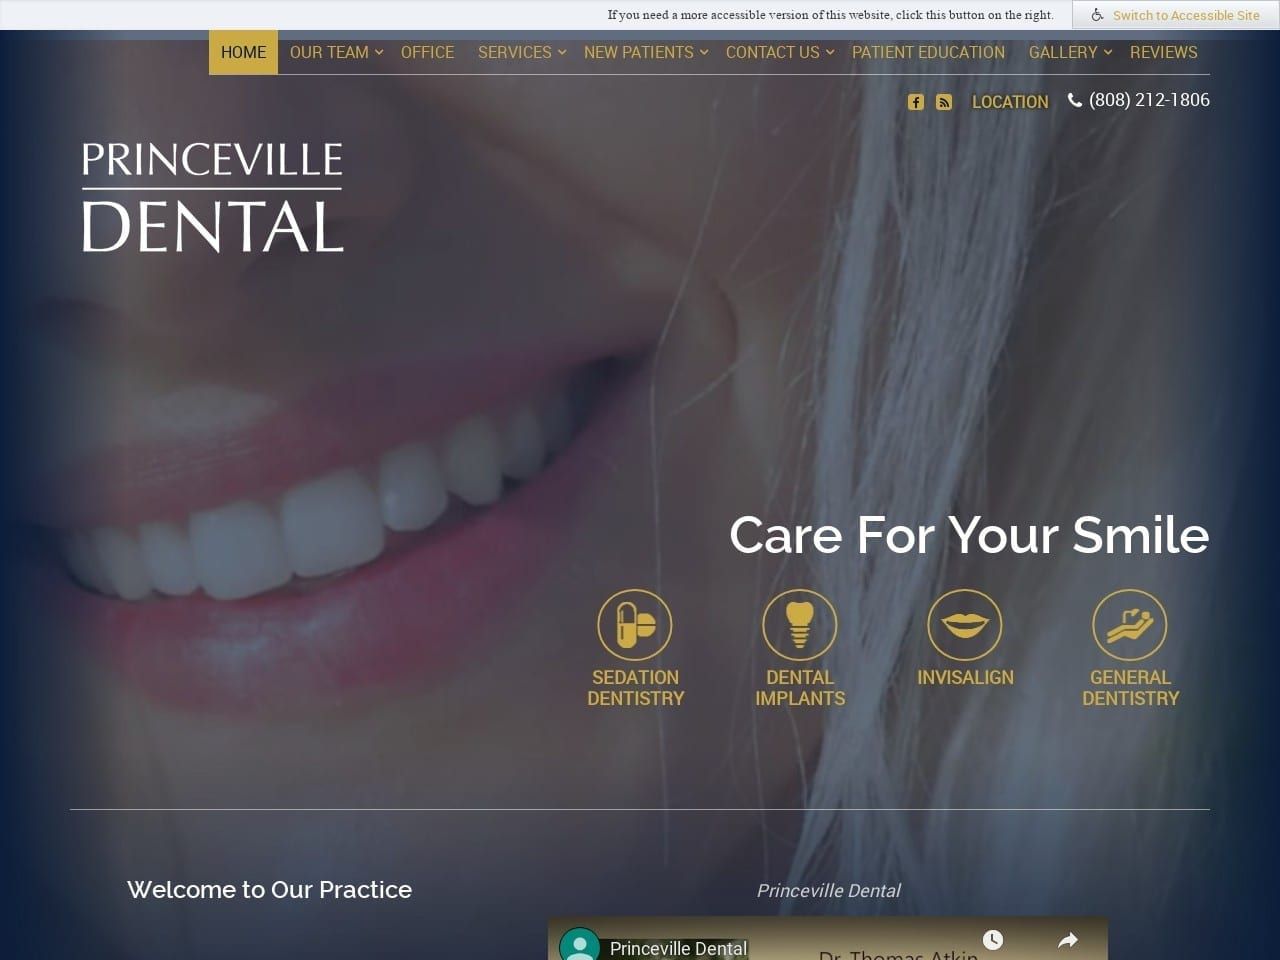 Princeville Dental Website Screenshot from princevilledental.com